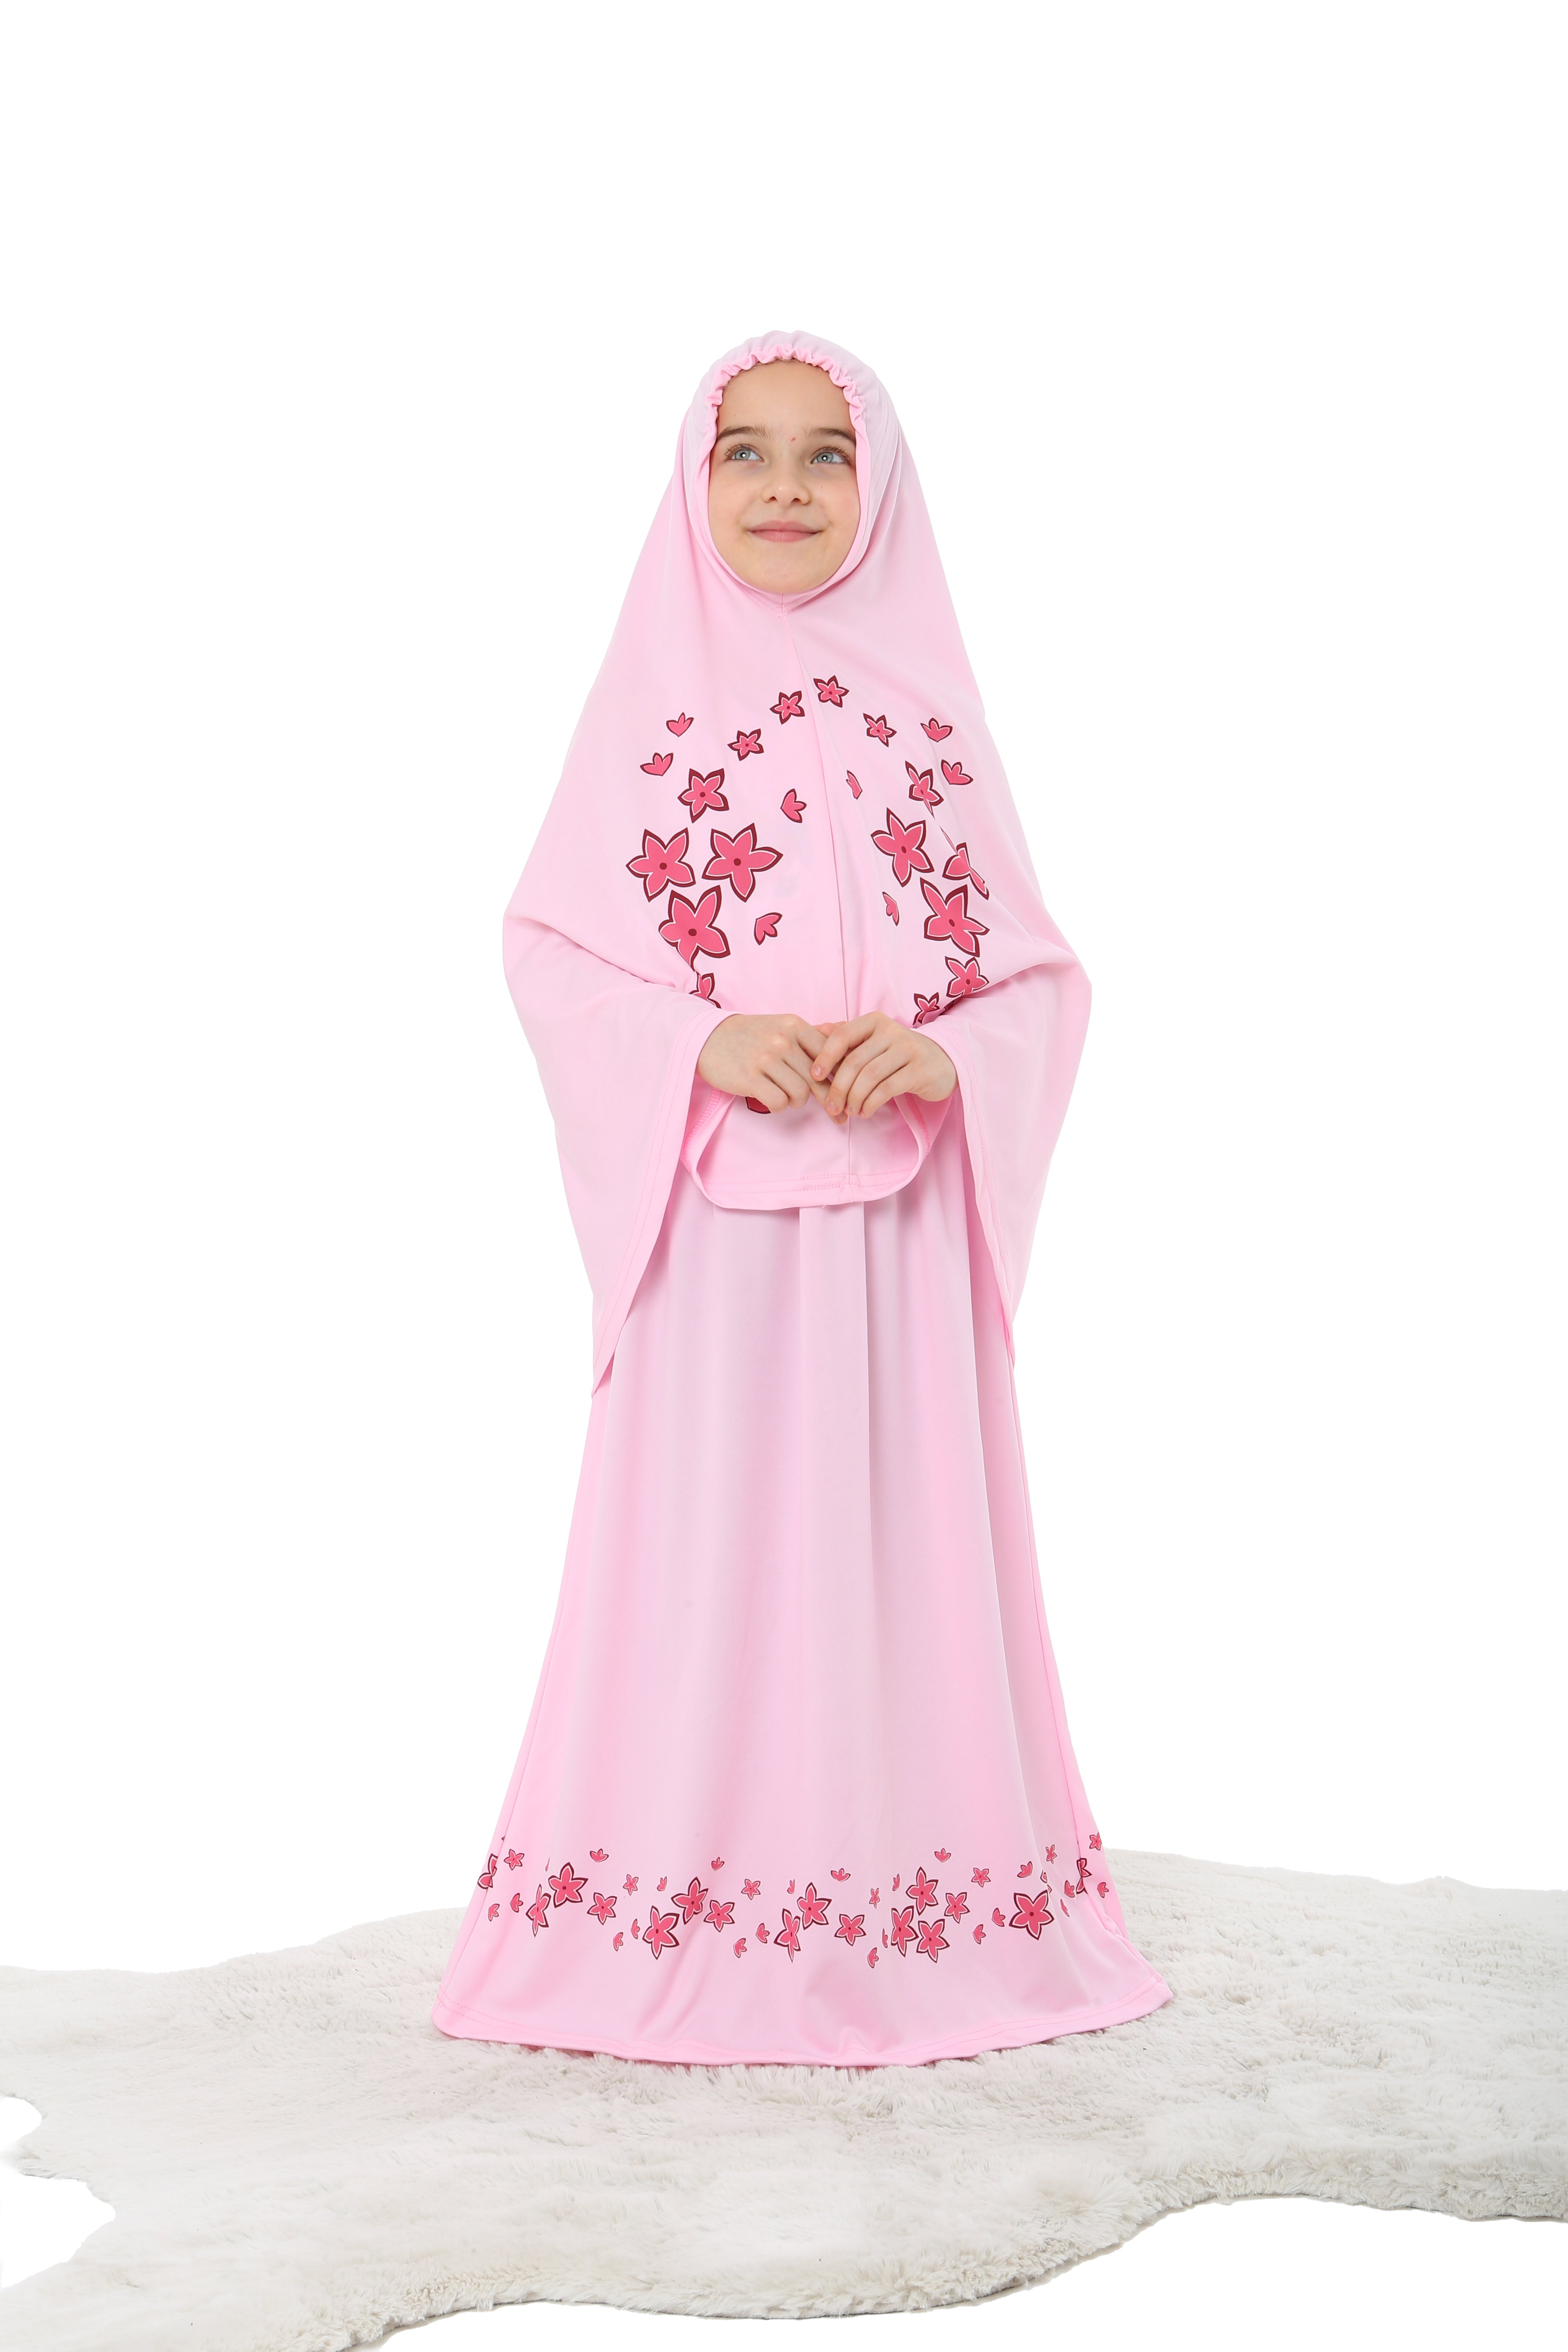 Prayer dress for children